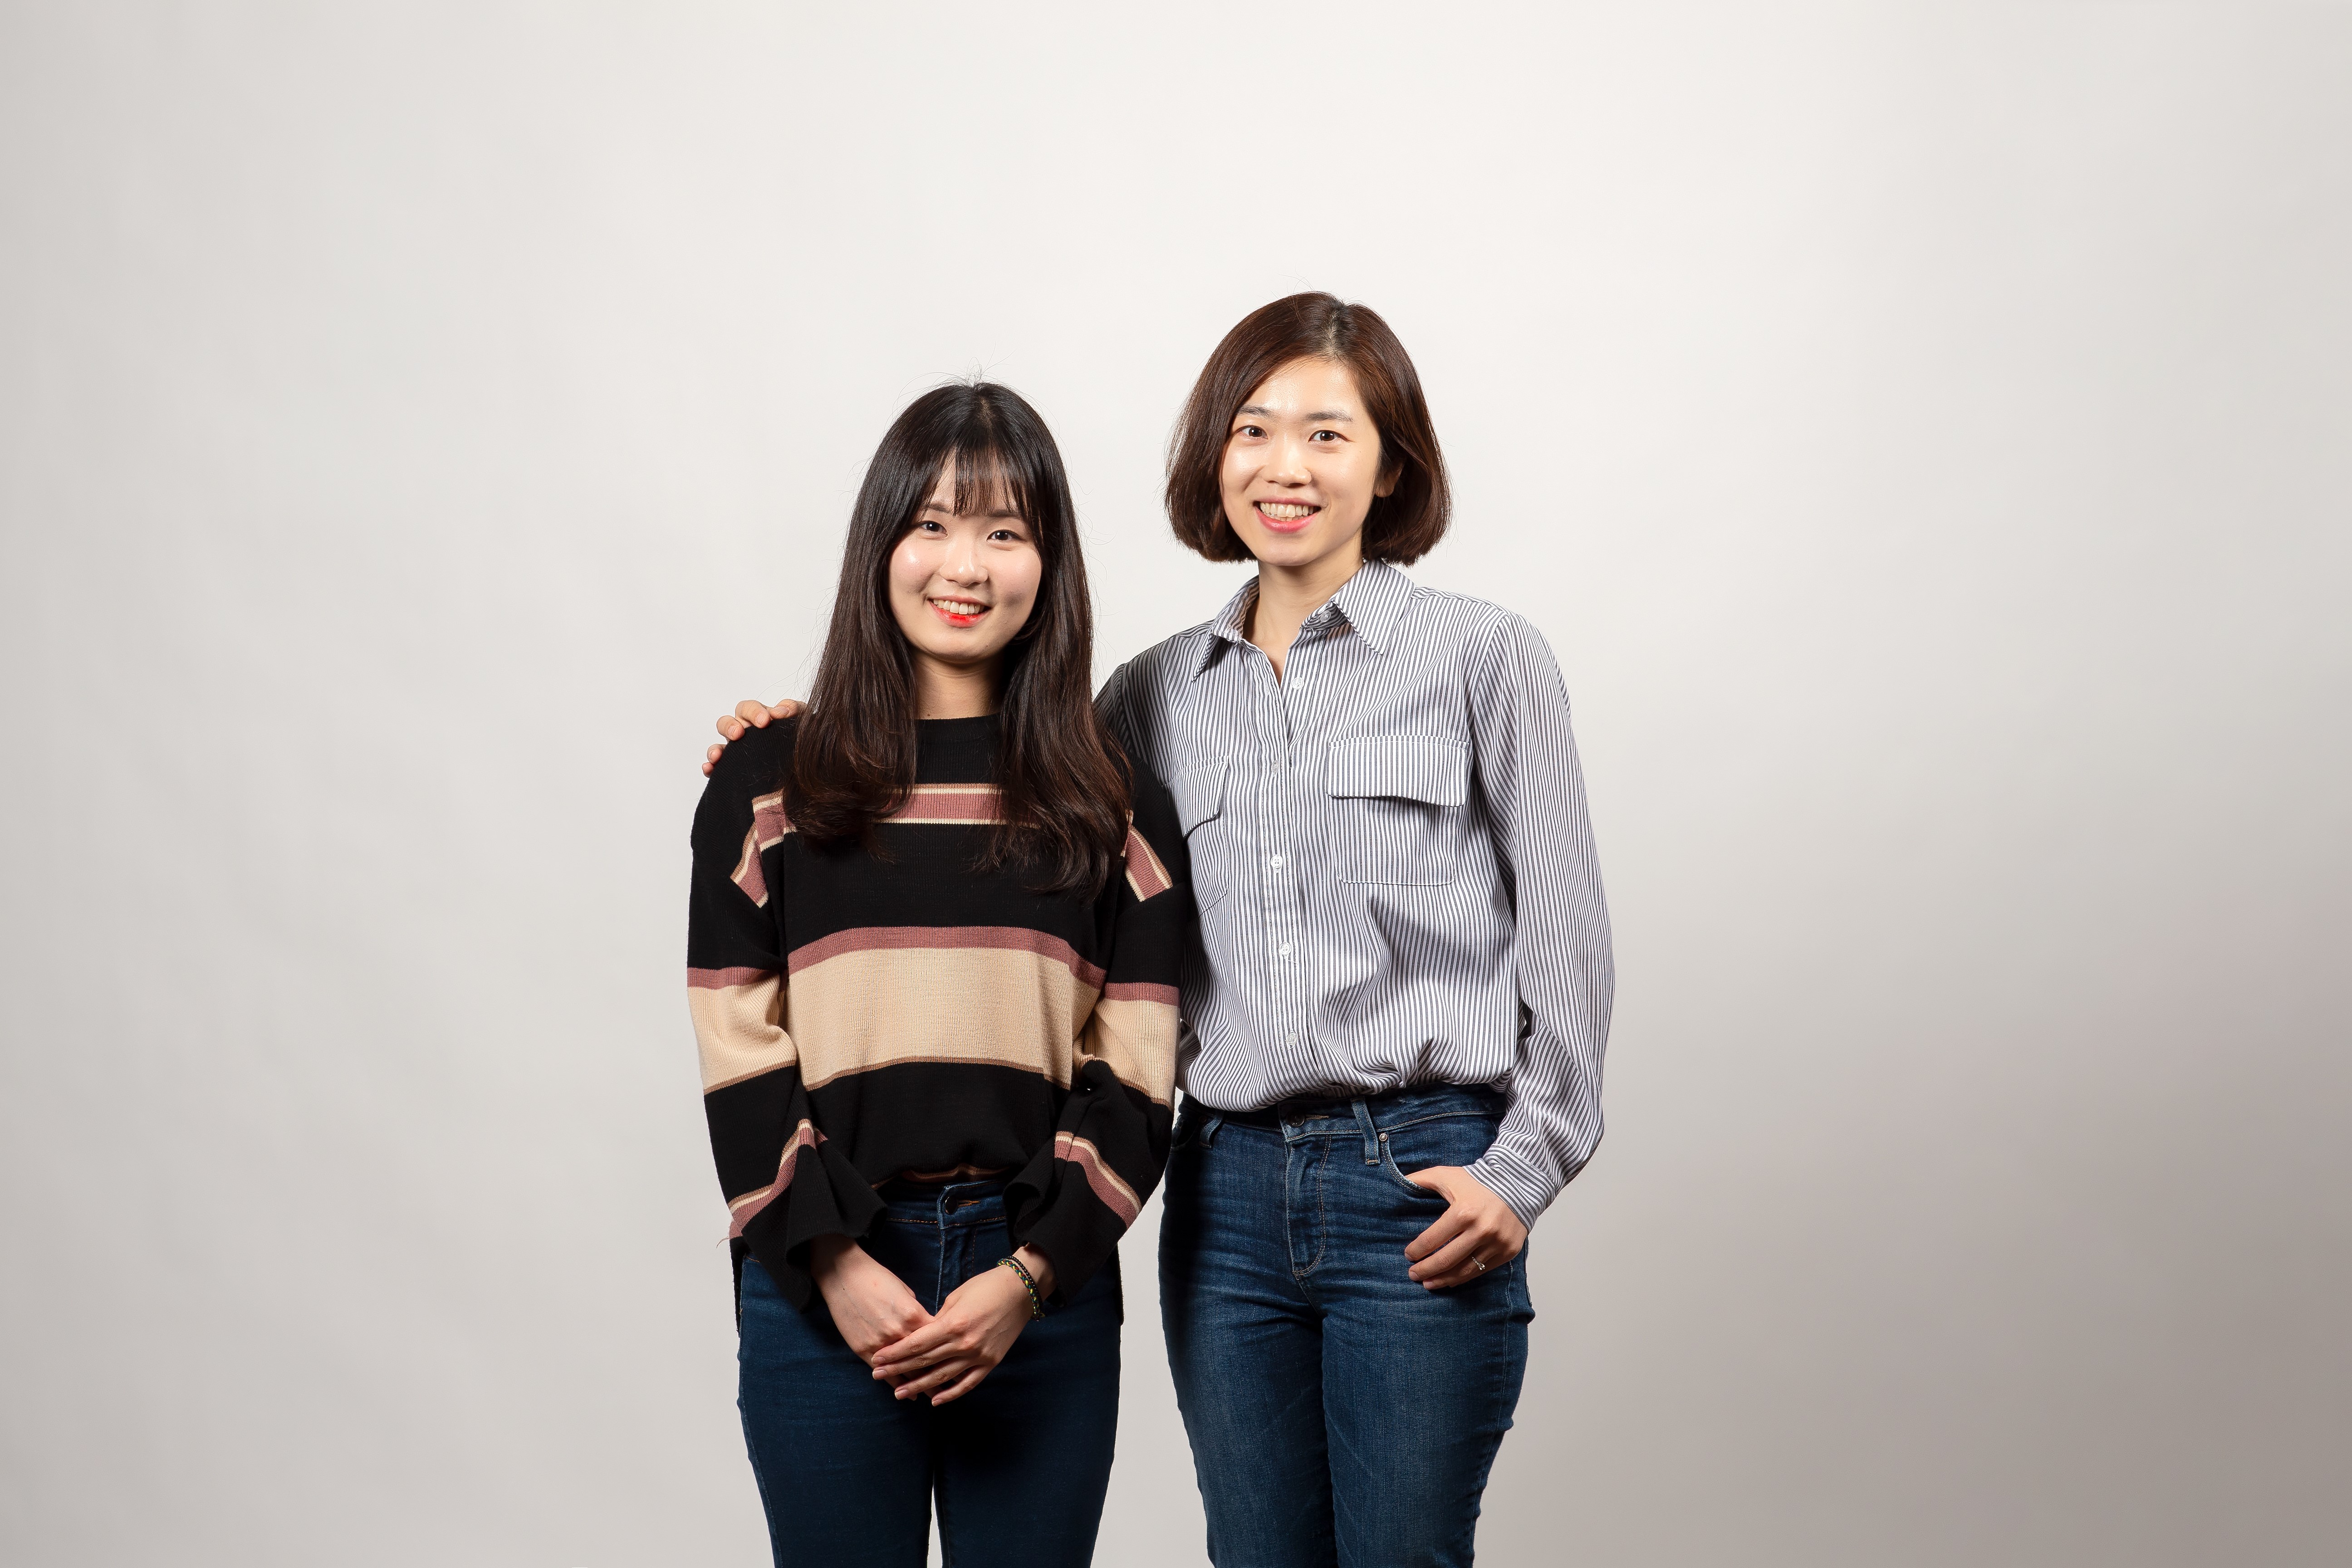 오솔미 대학원생(왼쪽)과 김소연 교수(오른쪽) | 사진: 김경채